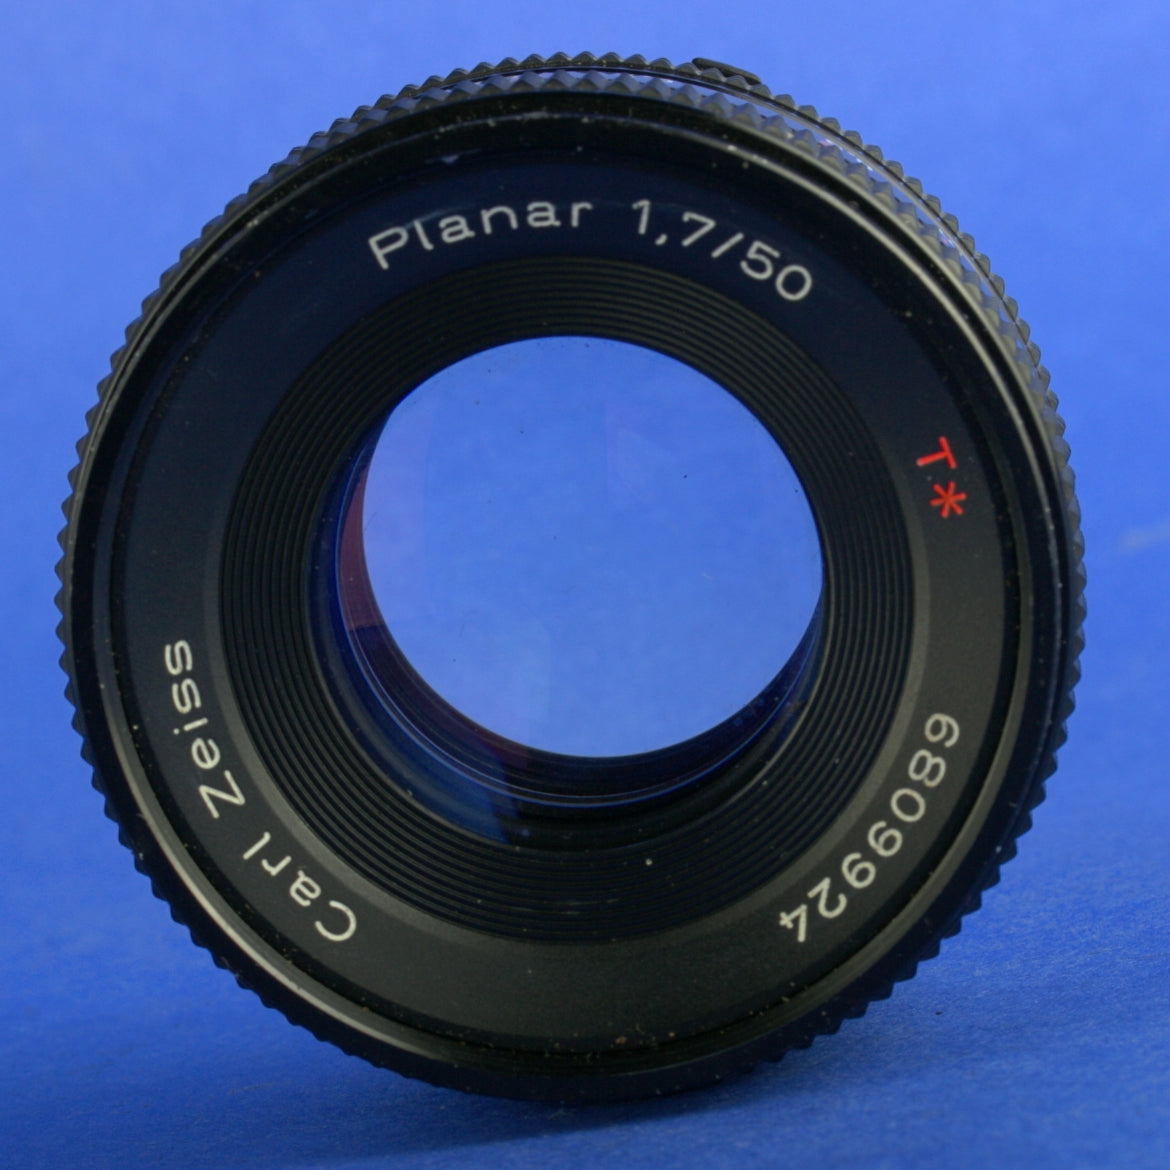 Contax Planar 50mm 1.7 MMJ C/Y Lens